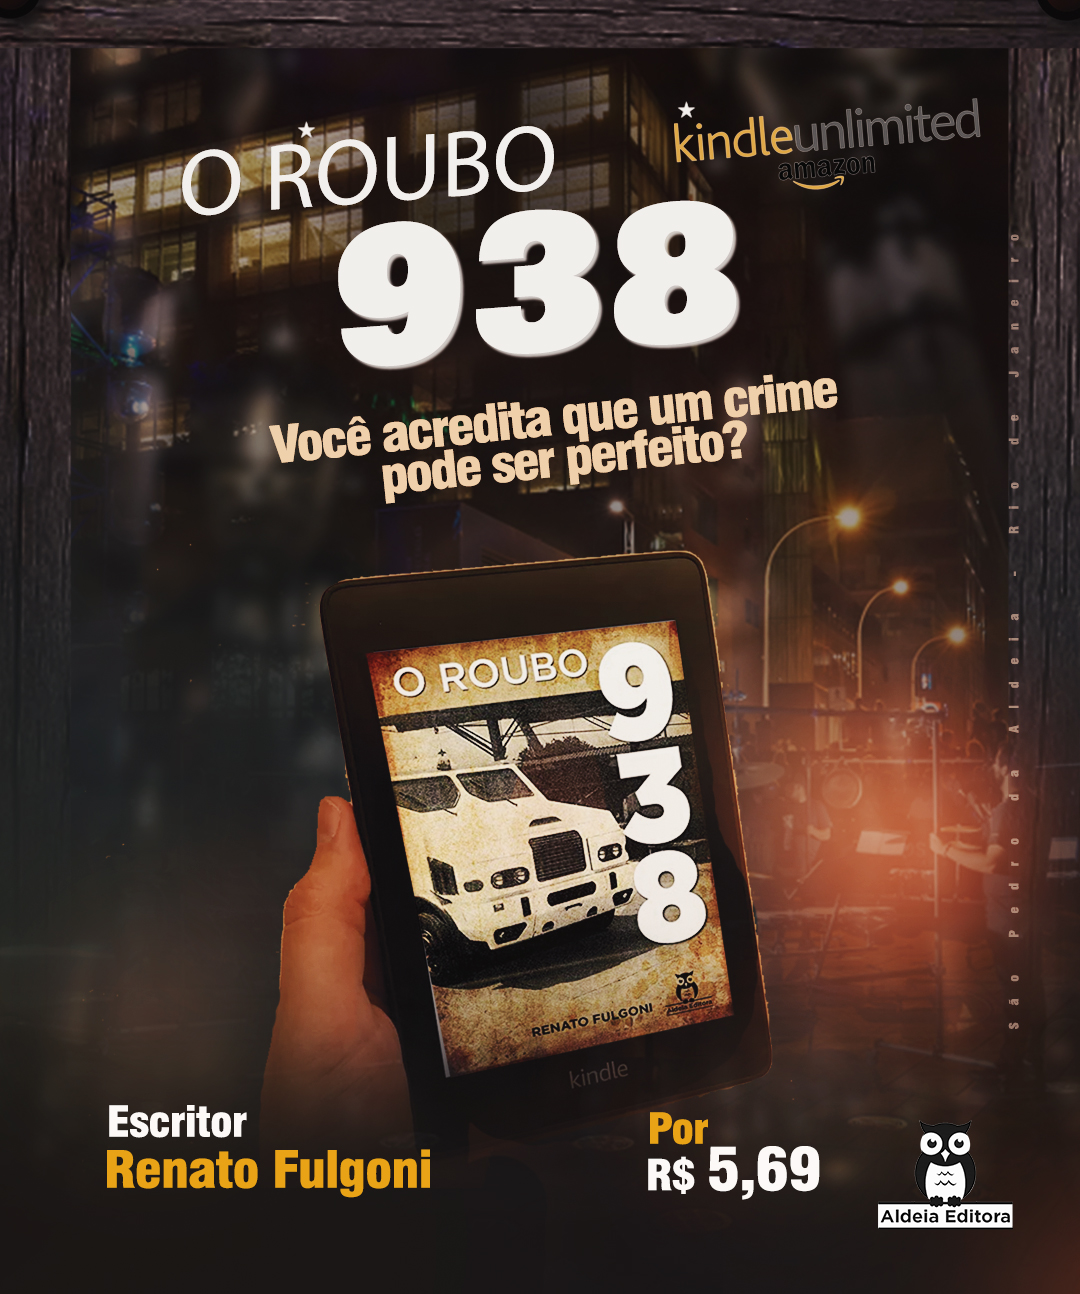 E-book "O Roubo 938"